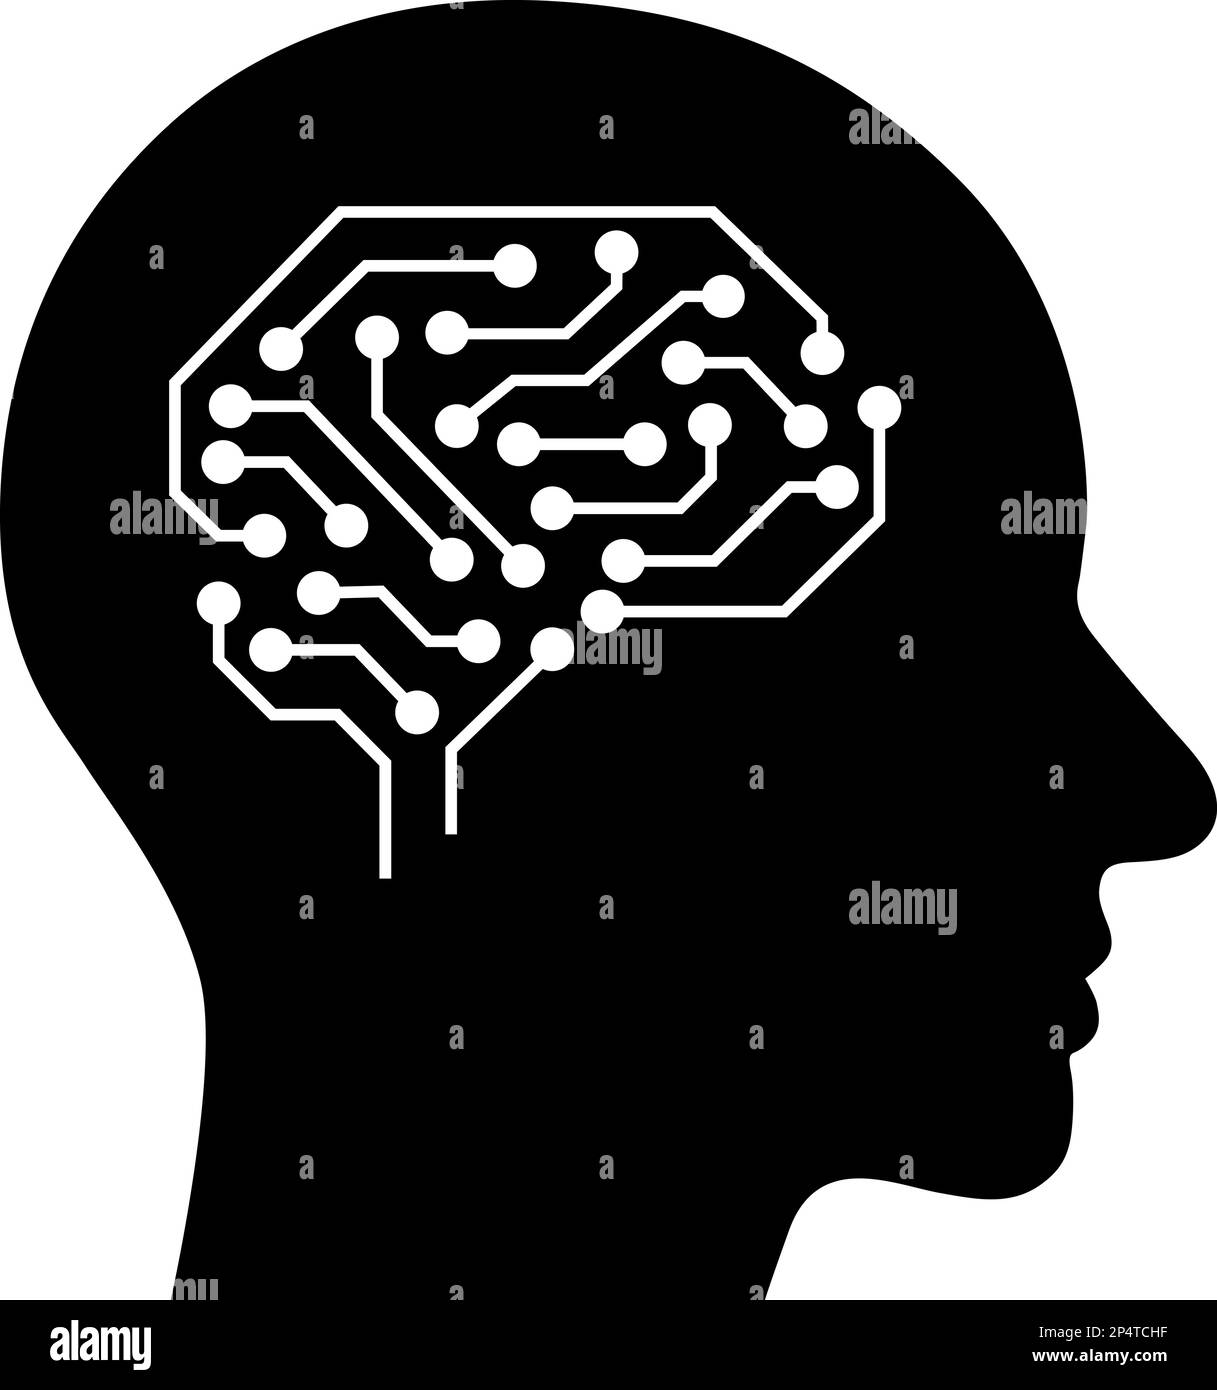 Icona piatta del cervello umano come concetto di mente, memoria e pensiero Illustrazione Vettoriale